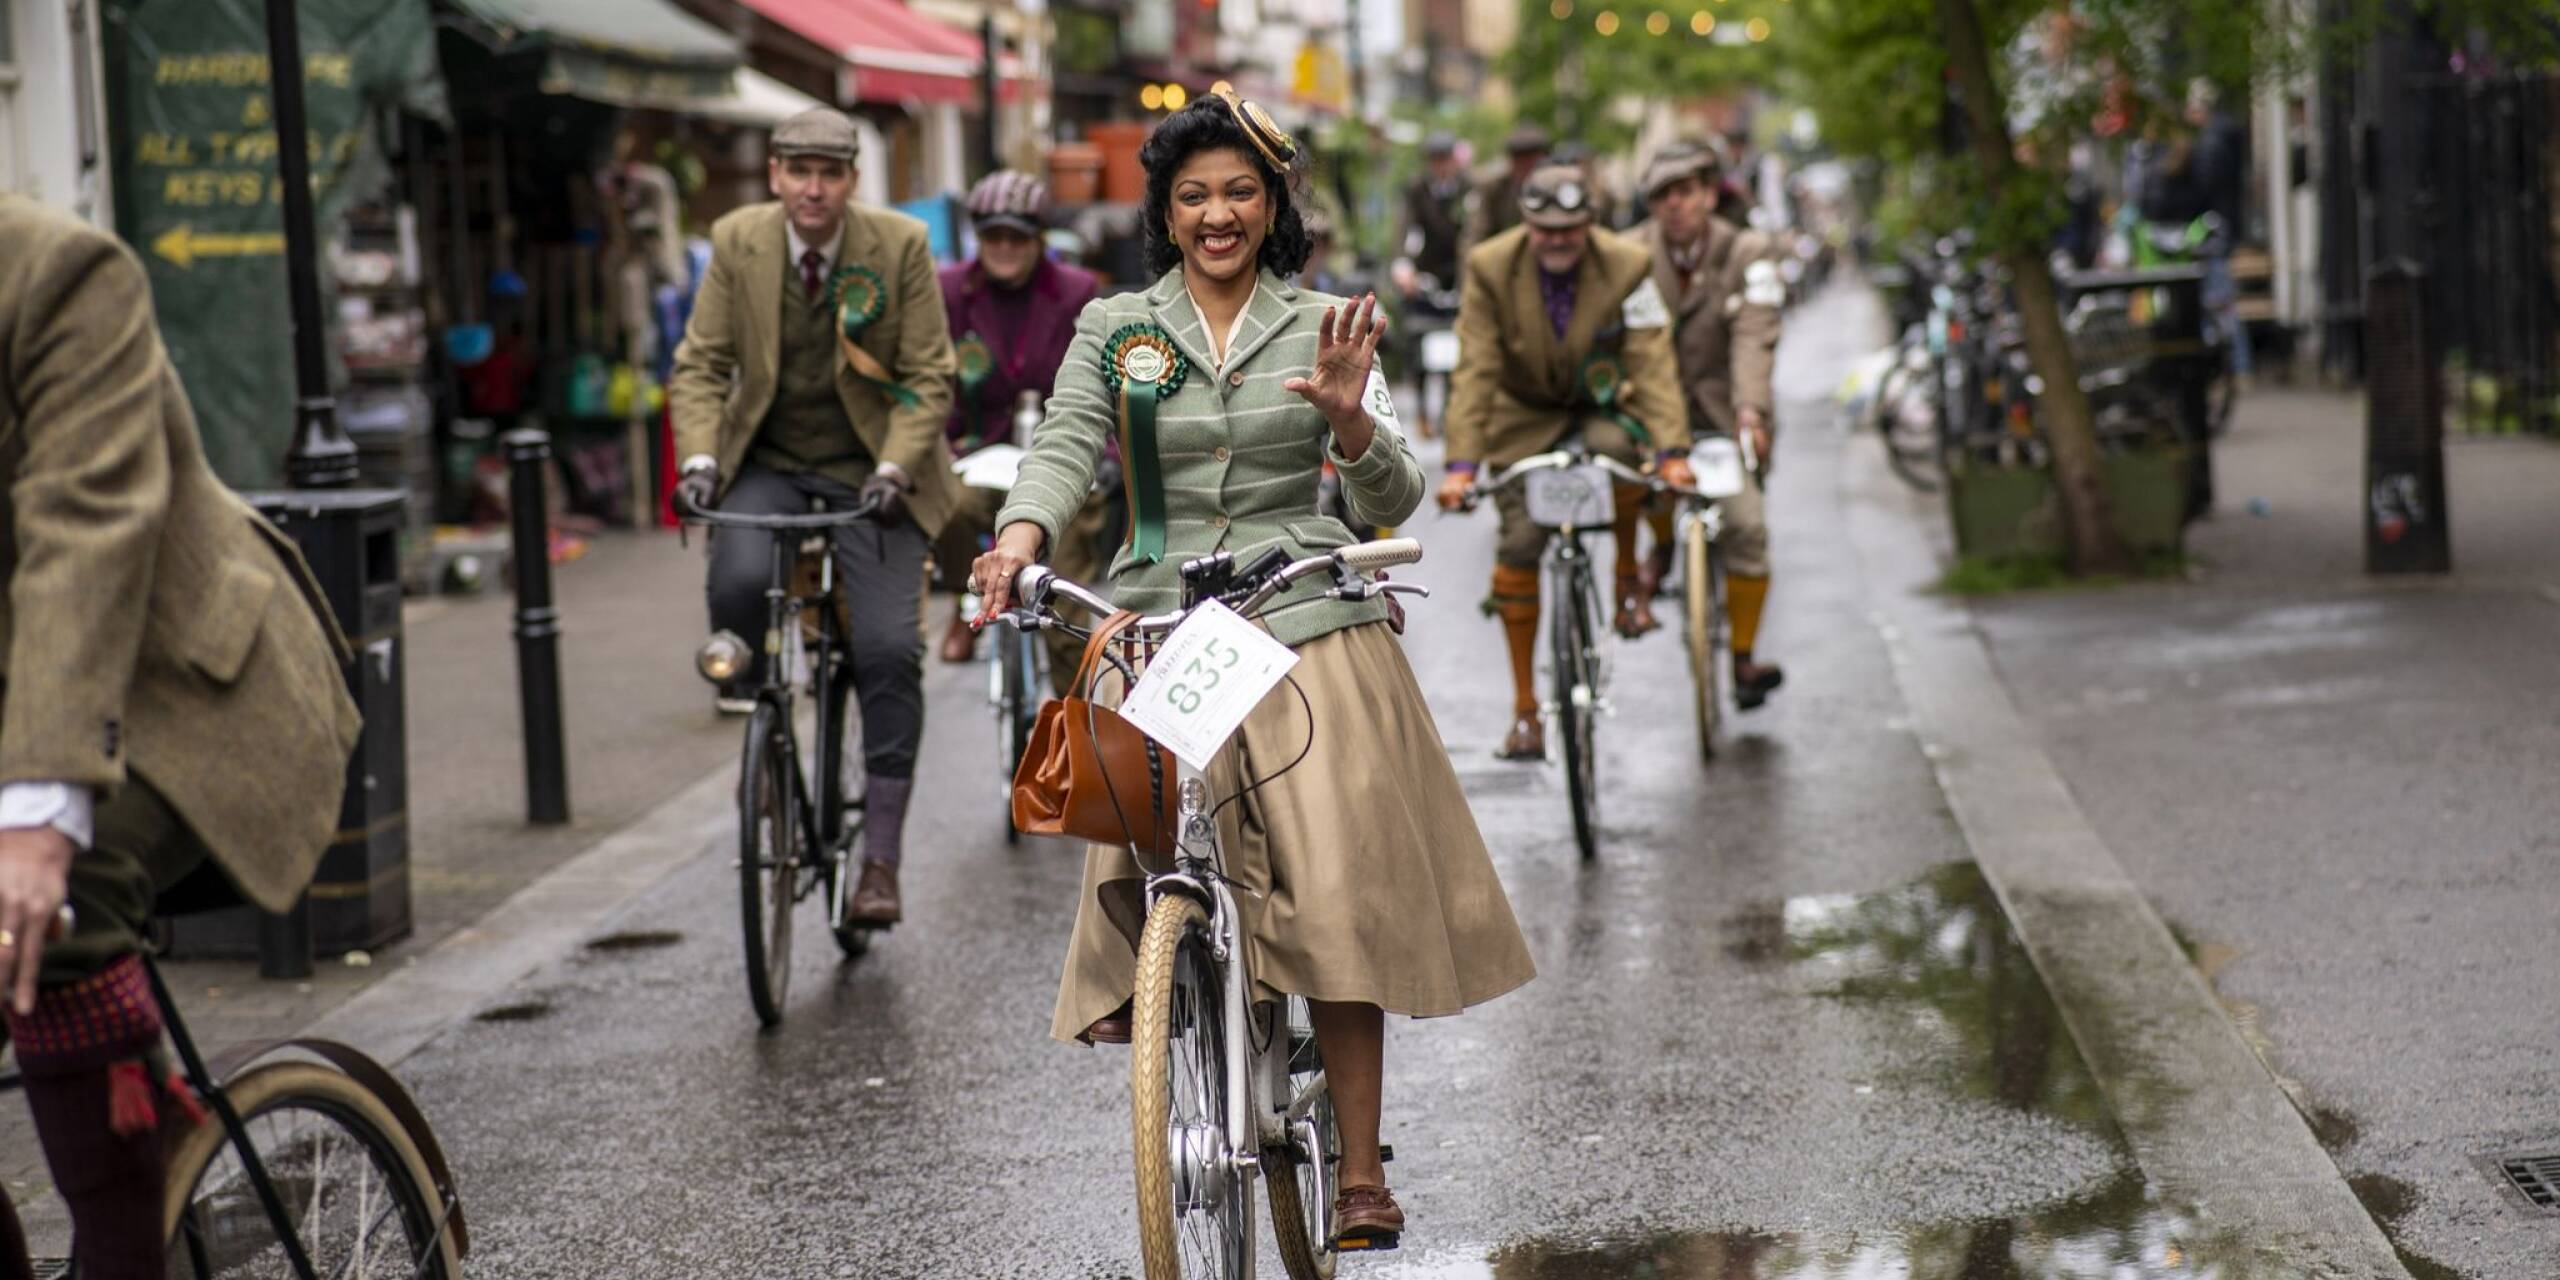 Durch London im Retro-Stil: Traditionell britisch gekleidet, vorzugsweise Tweed, und mit klassischen Fahrrädern sind die Teilnehmer des jährlichen «Tweed Run» unterwegs.